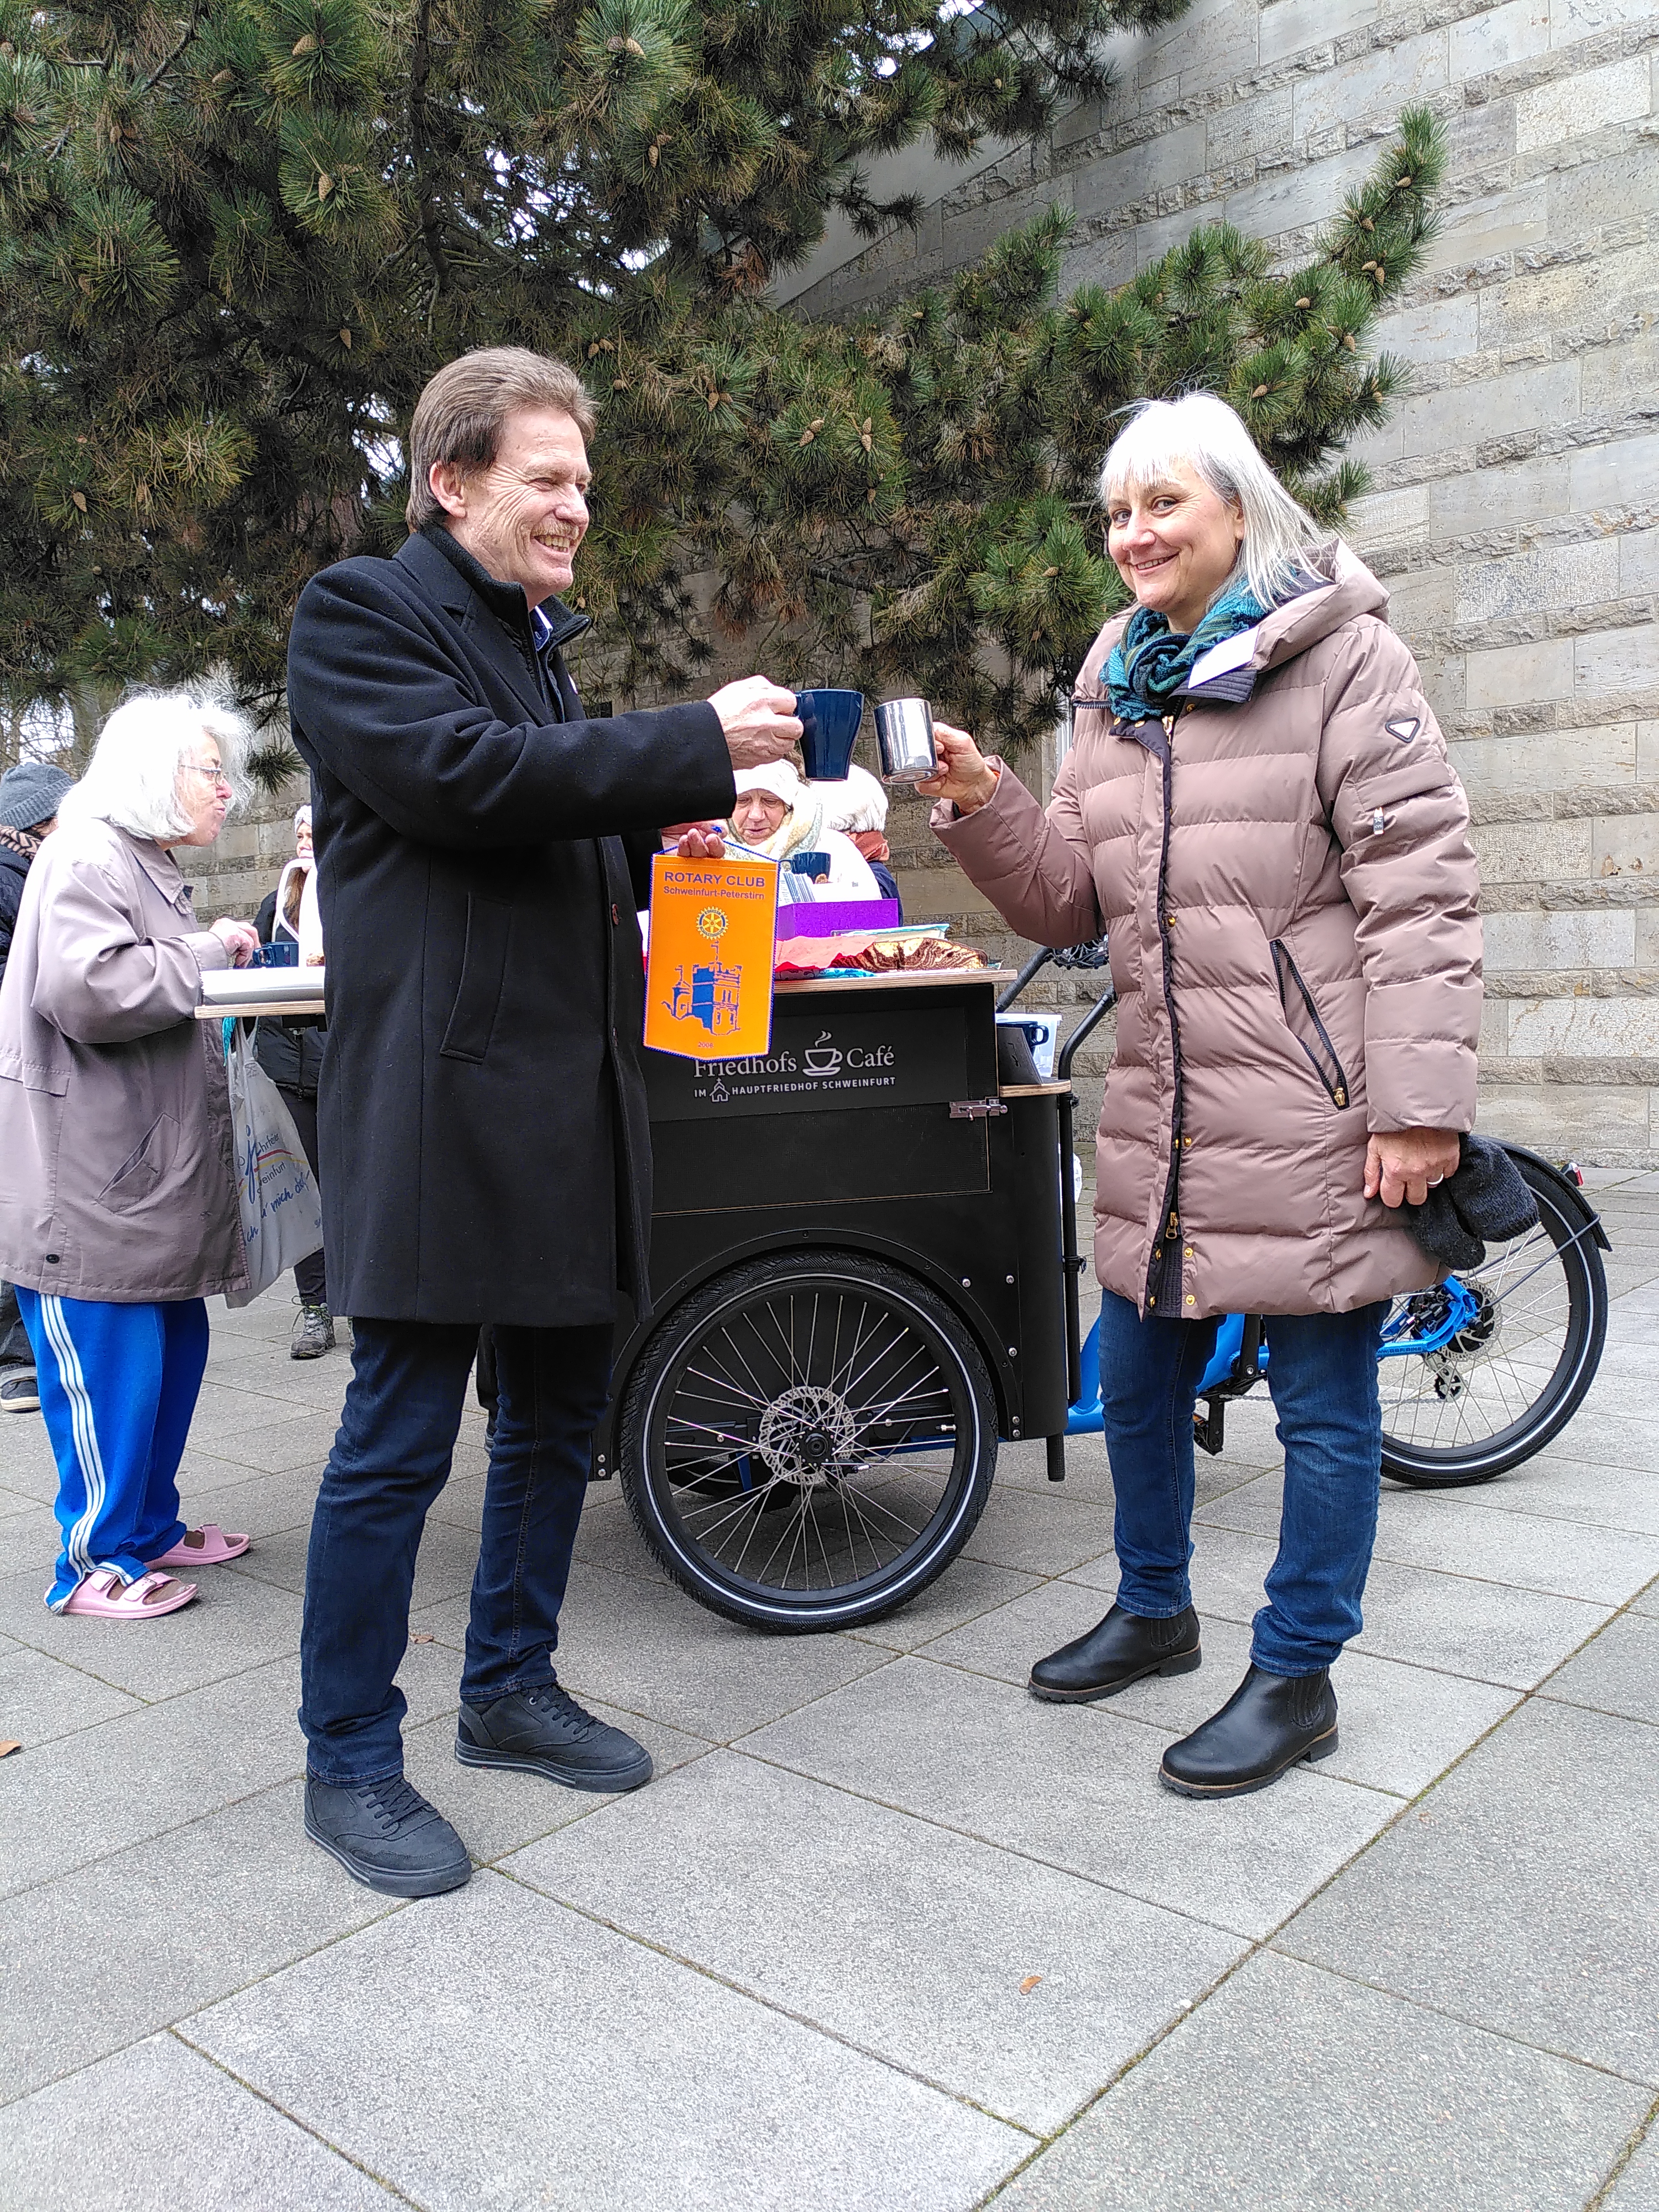 Ein Mann mit dunklem Mantel und eine grauhaarige Frau mit heller Jacke stoßen mit Kaffeebechern an. Der Mann übergibt einen orangen Club-Wimpel mit Rotary-Rad und einer Grafik darauf.